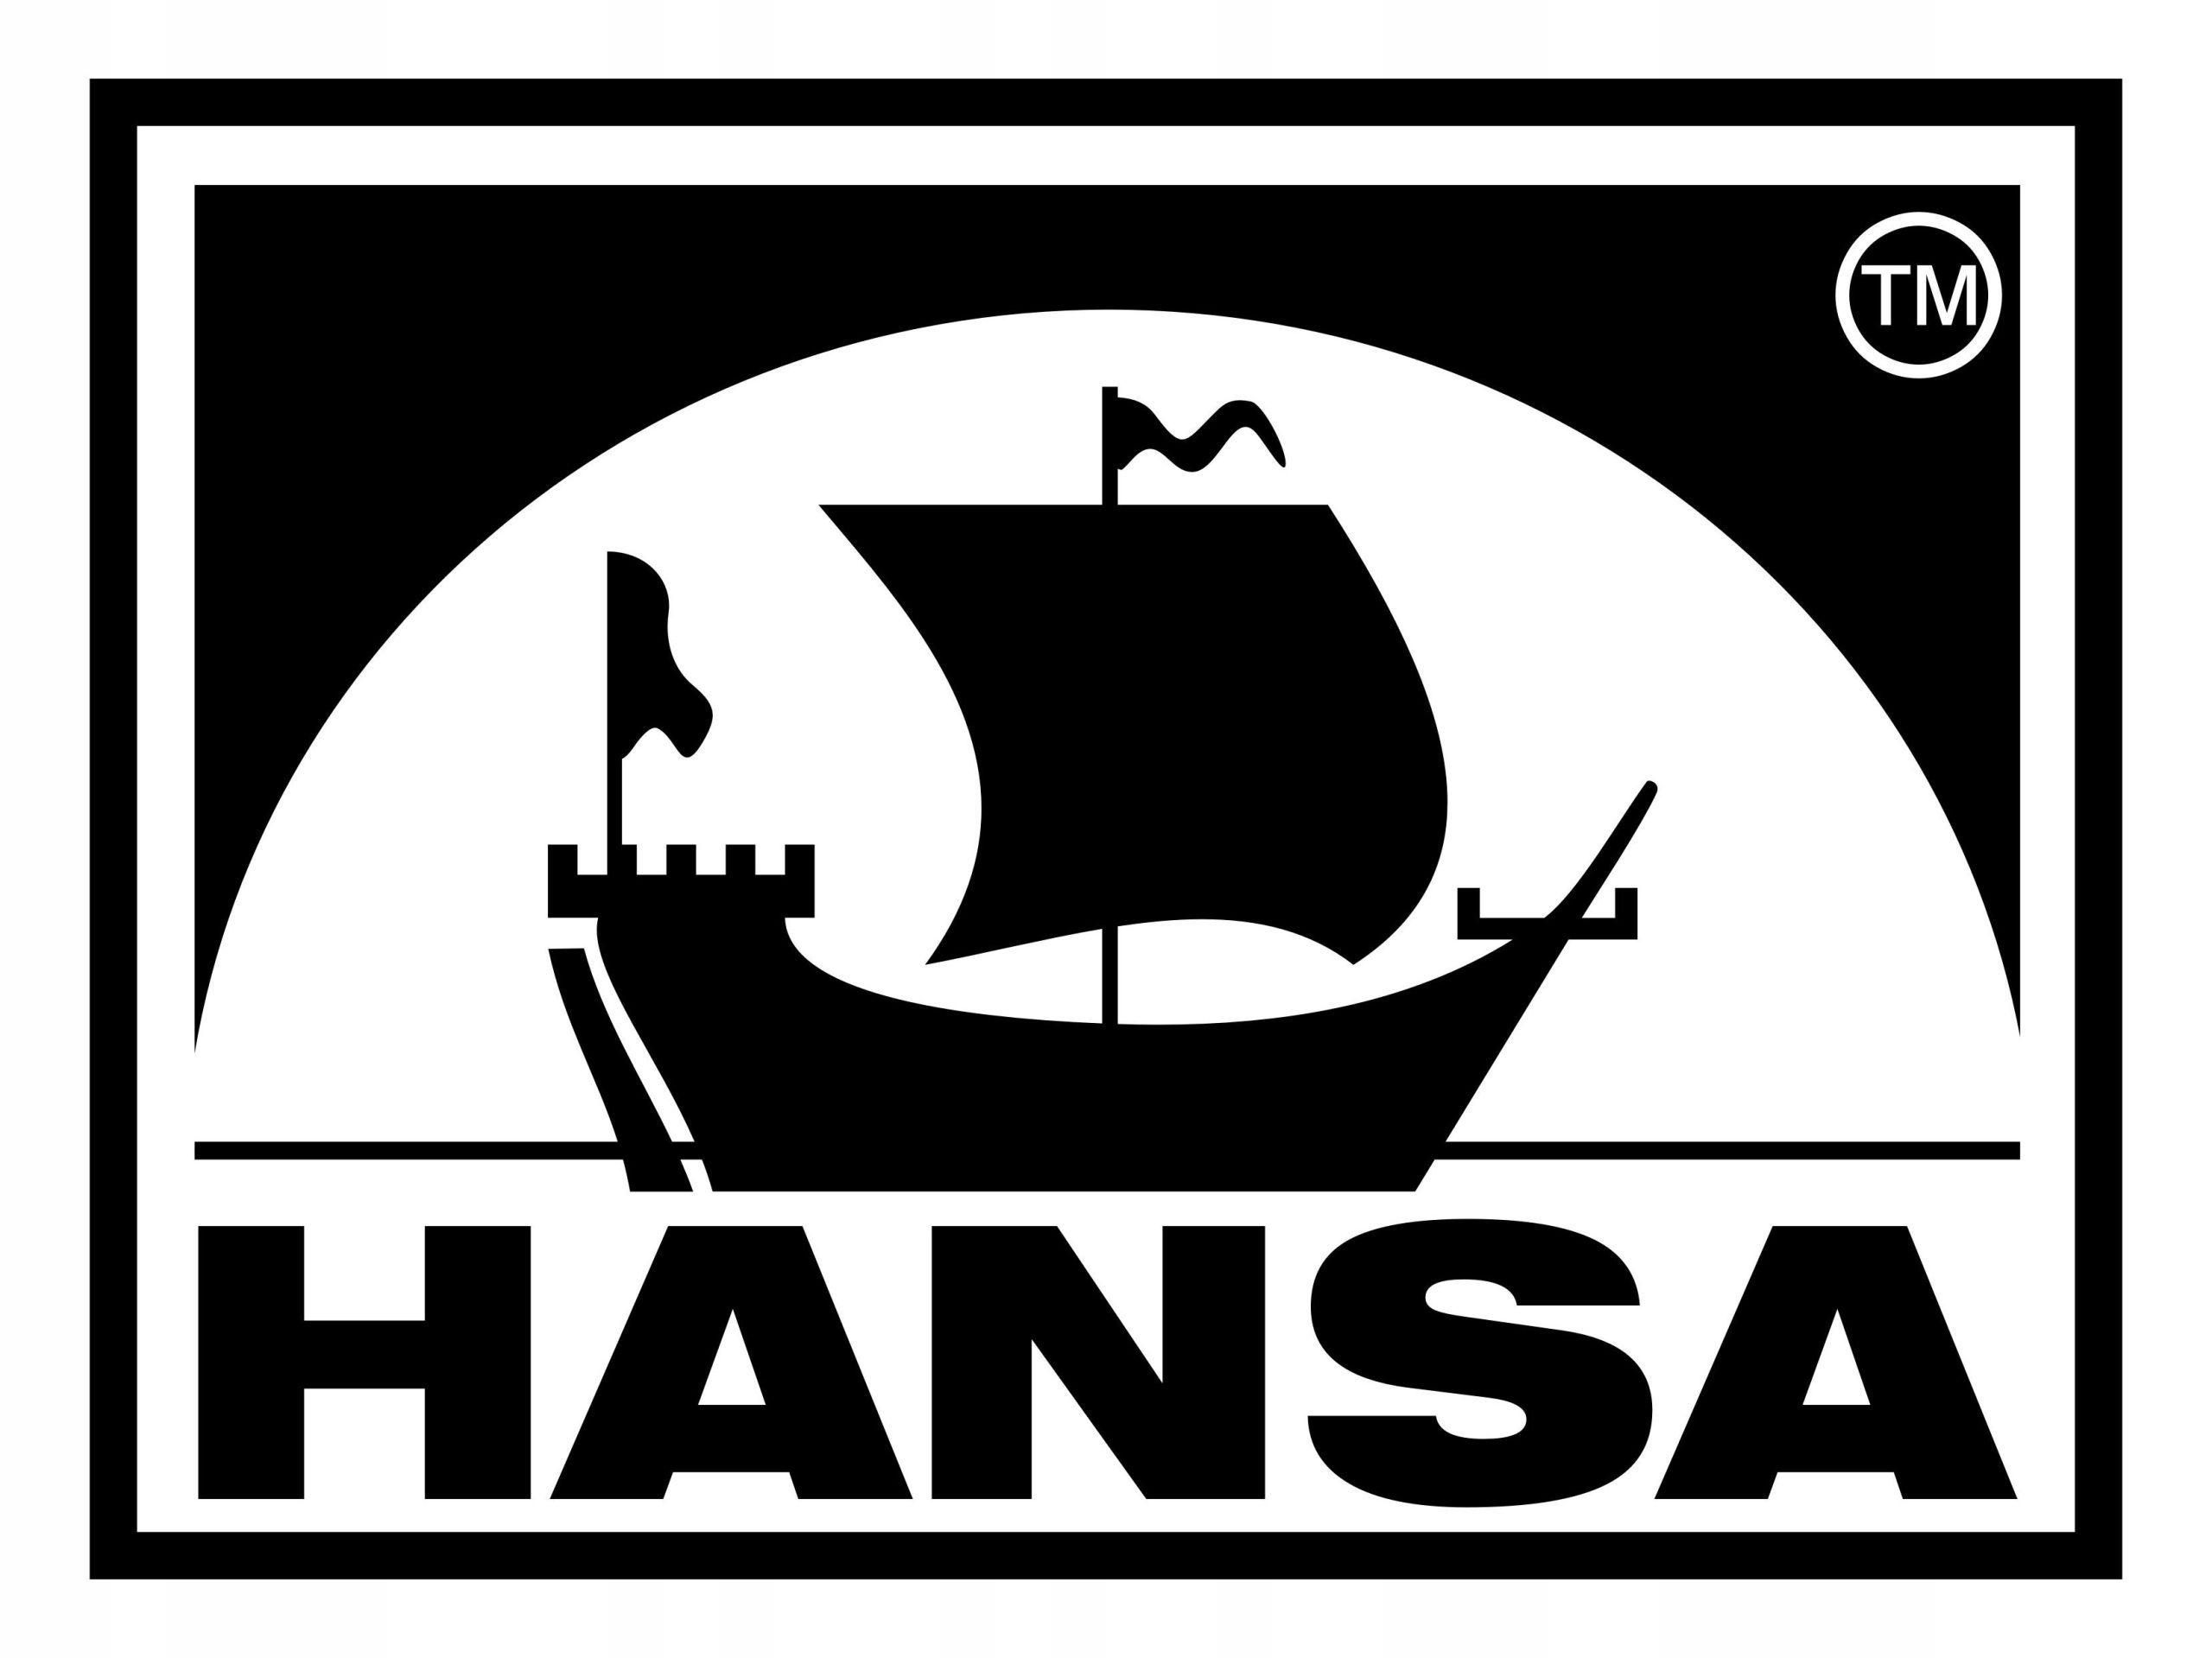 HANSA (ХАНСА)